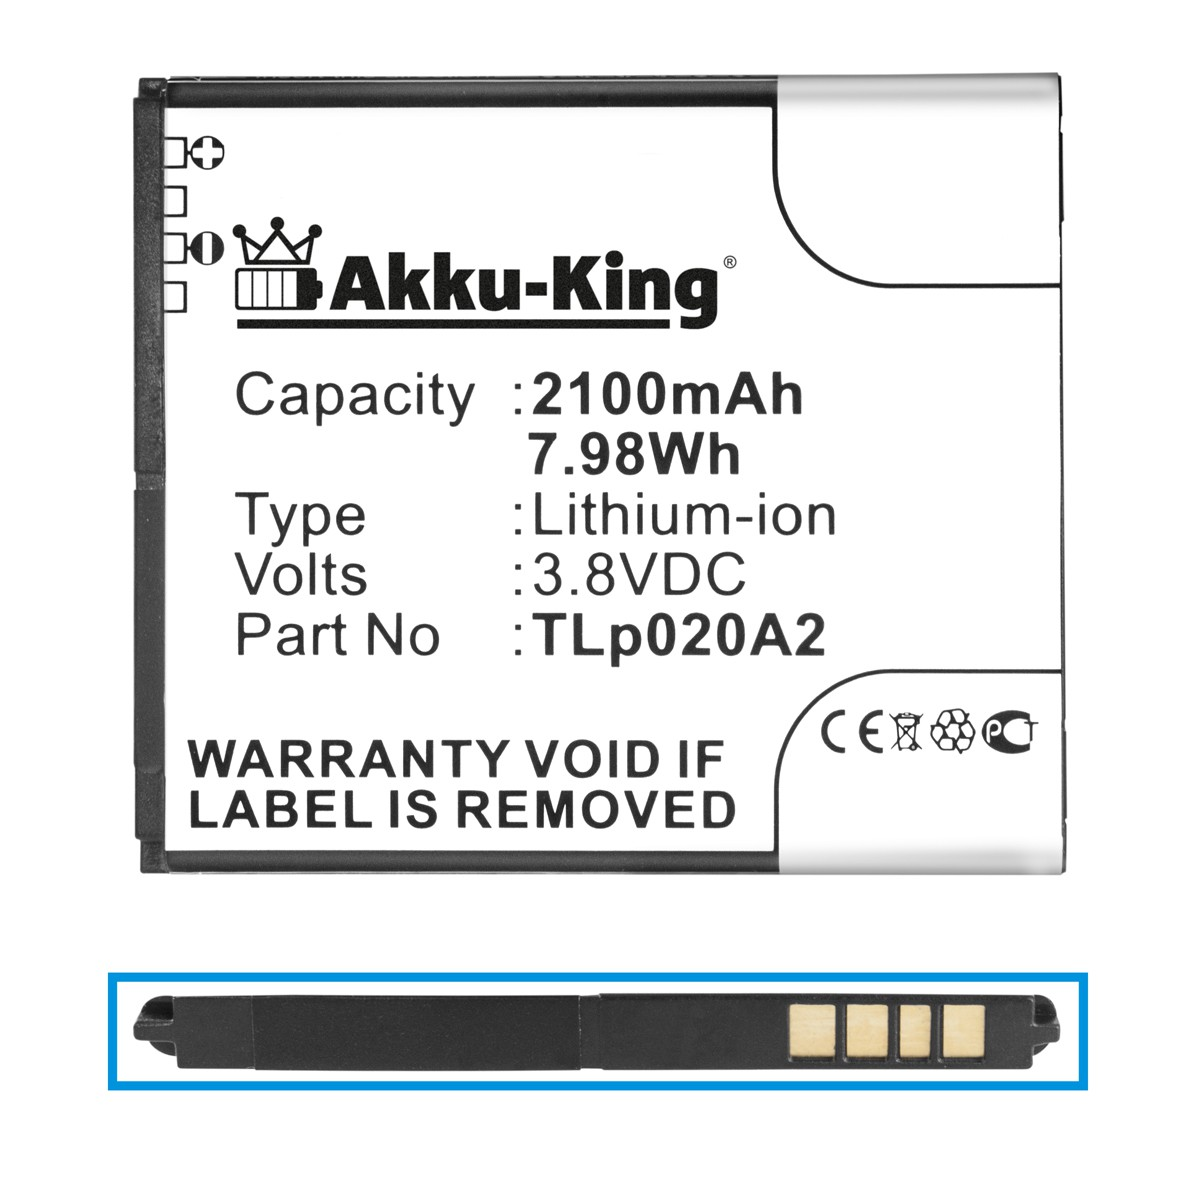 AKKU-KING Akku für Alcatel Tli020A1 3.8 2100mAh Li-Ion Handy-Akku, Volt